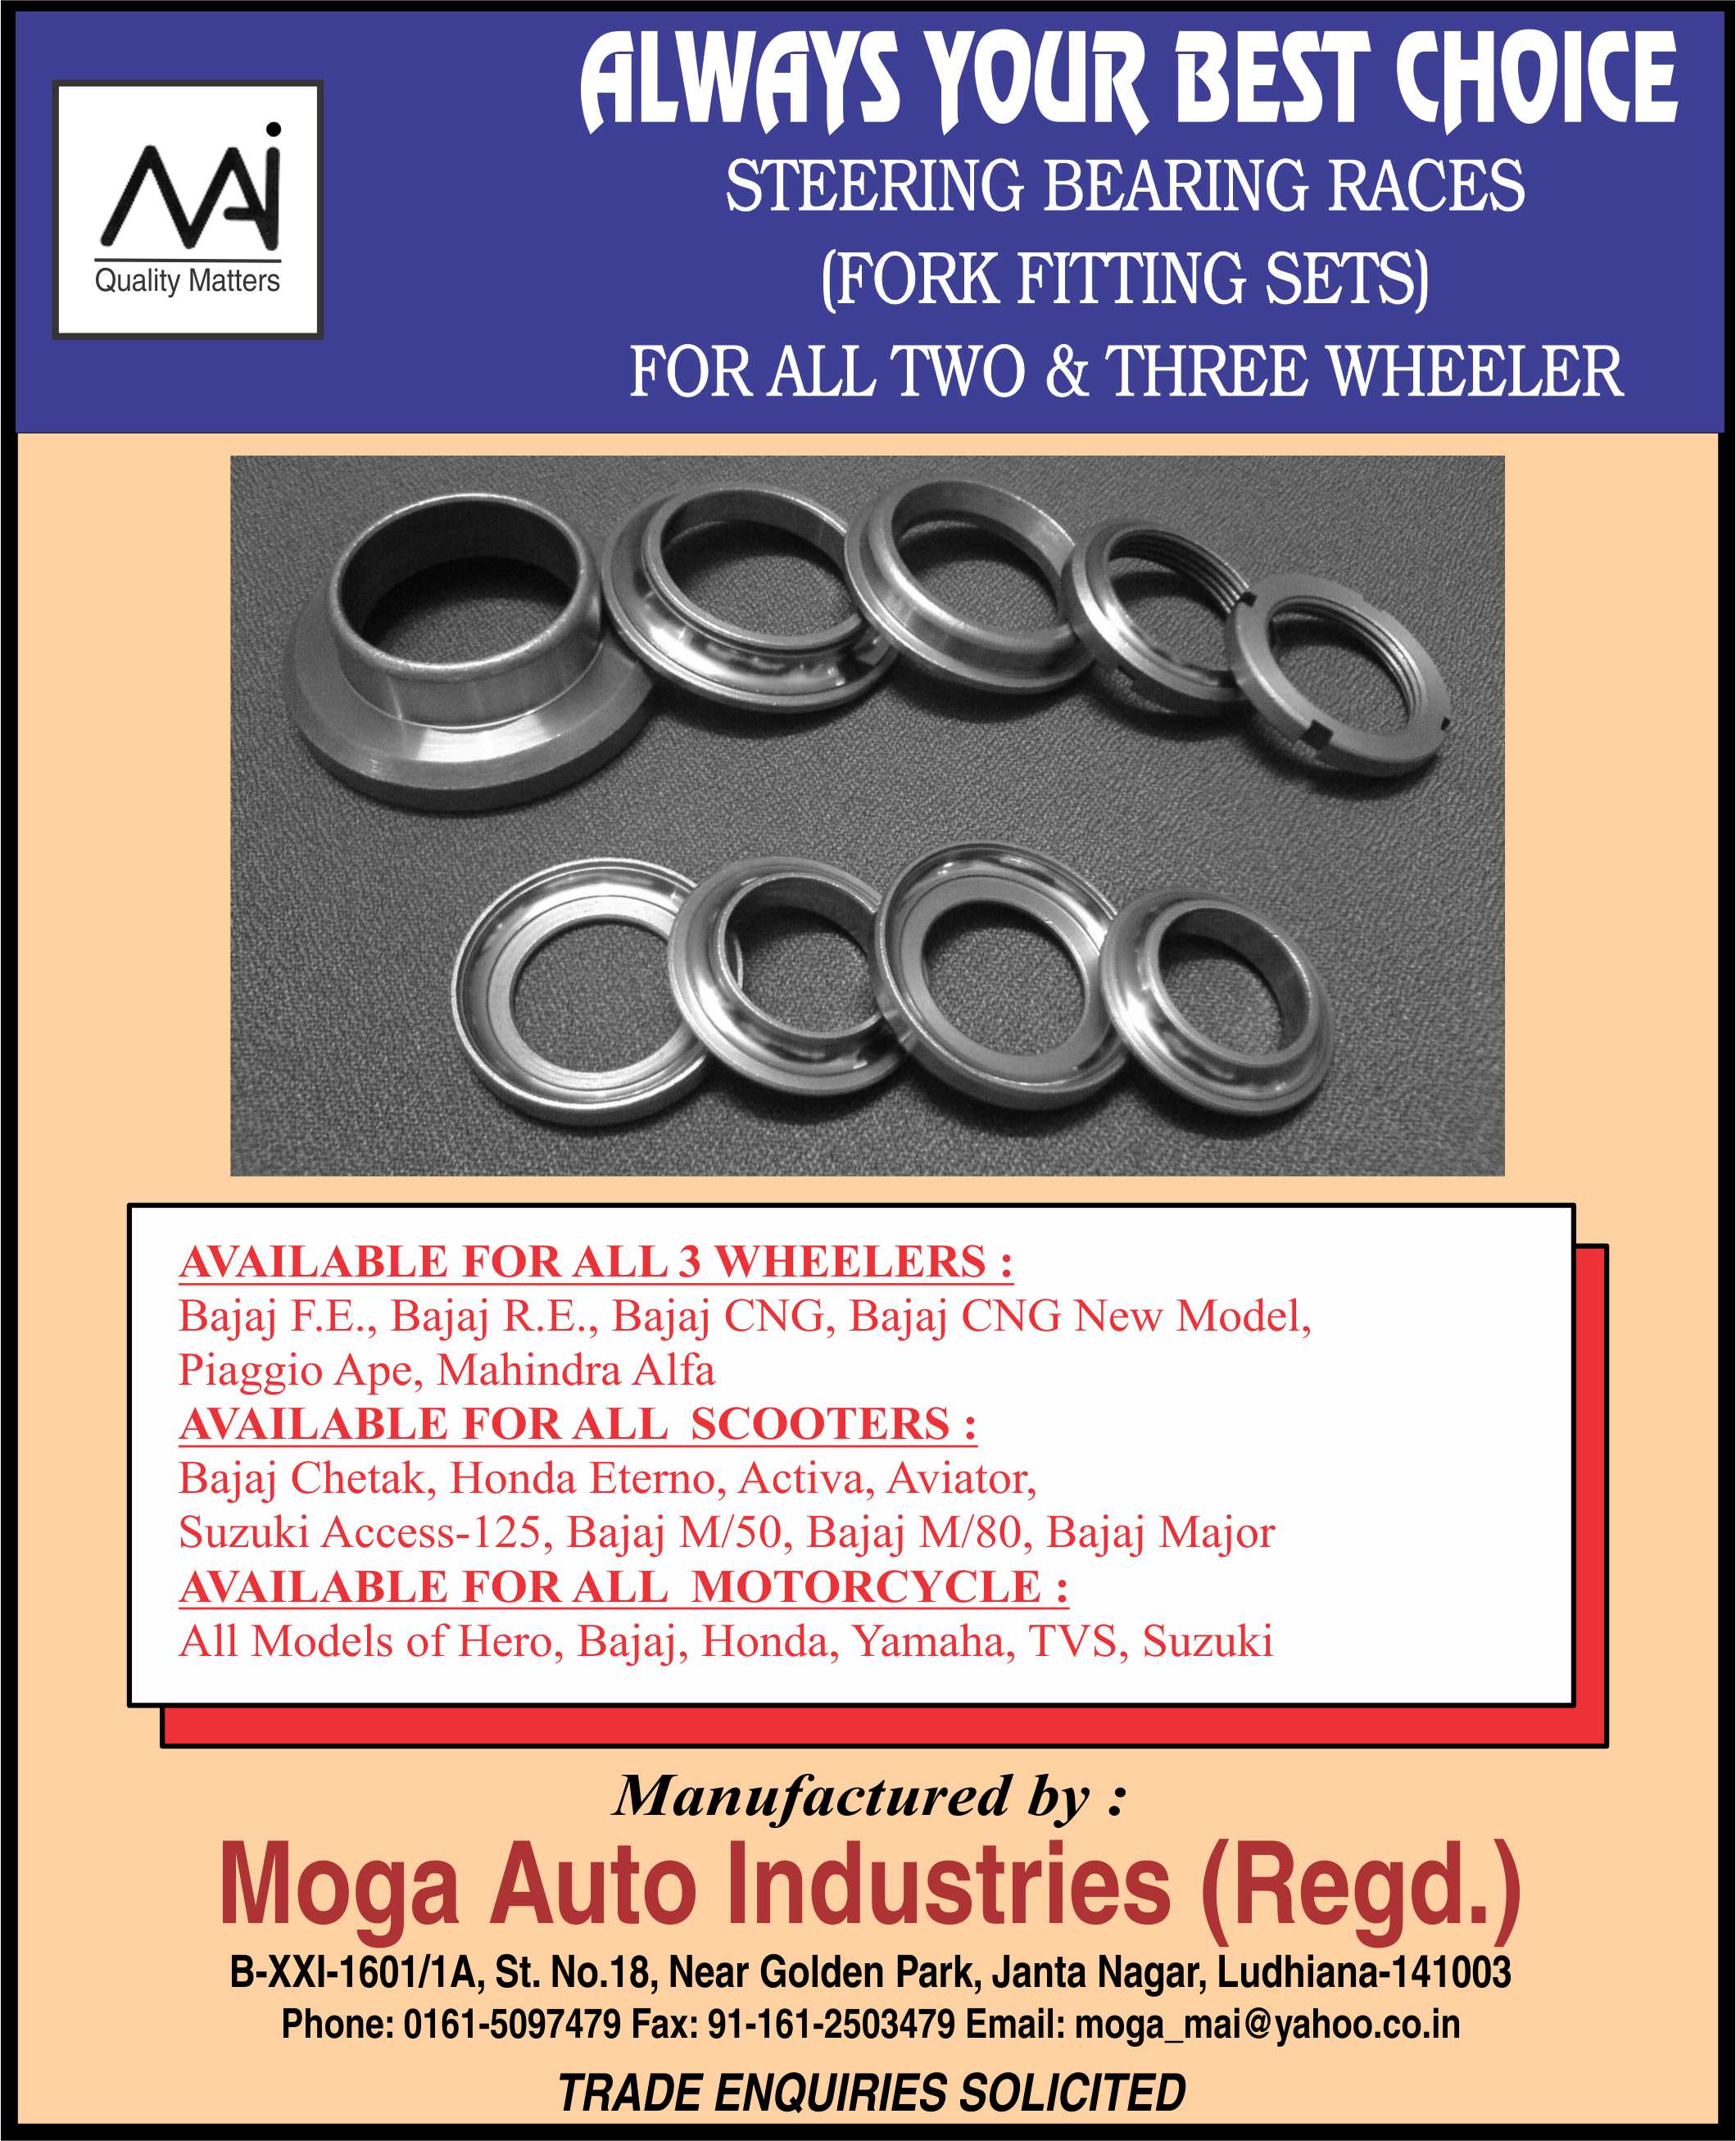 Moga Auto Industries (Regd)